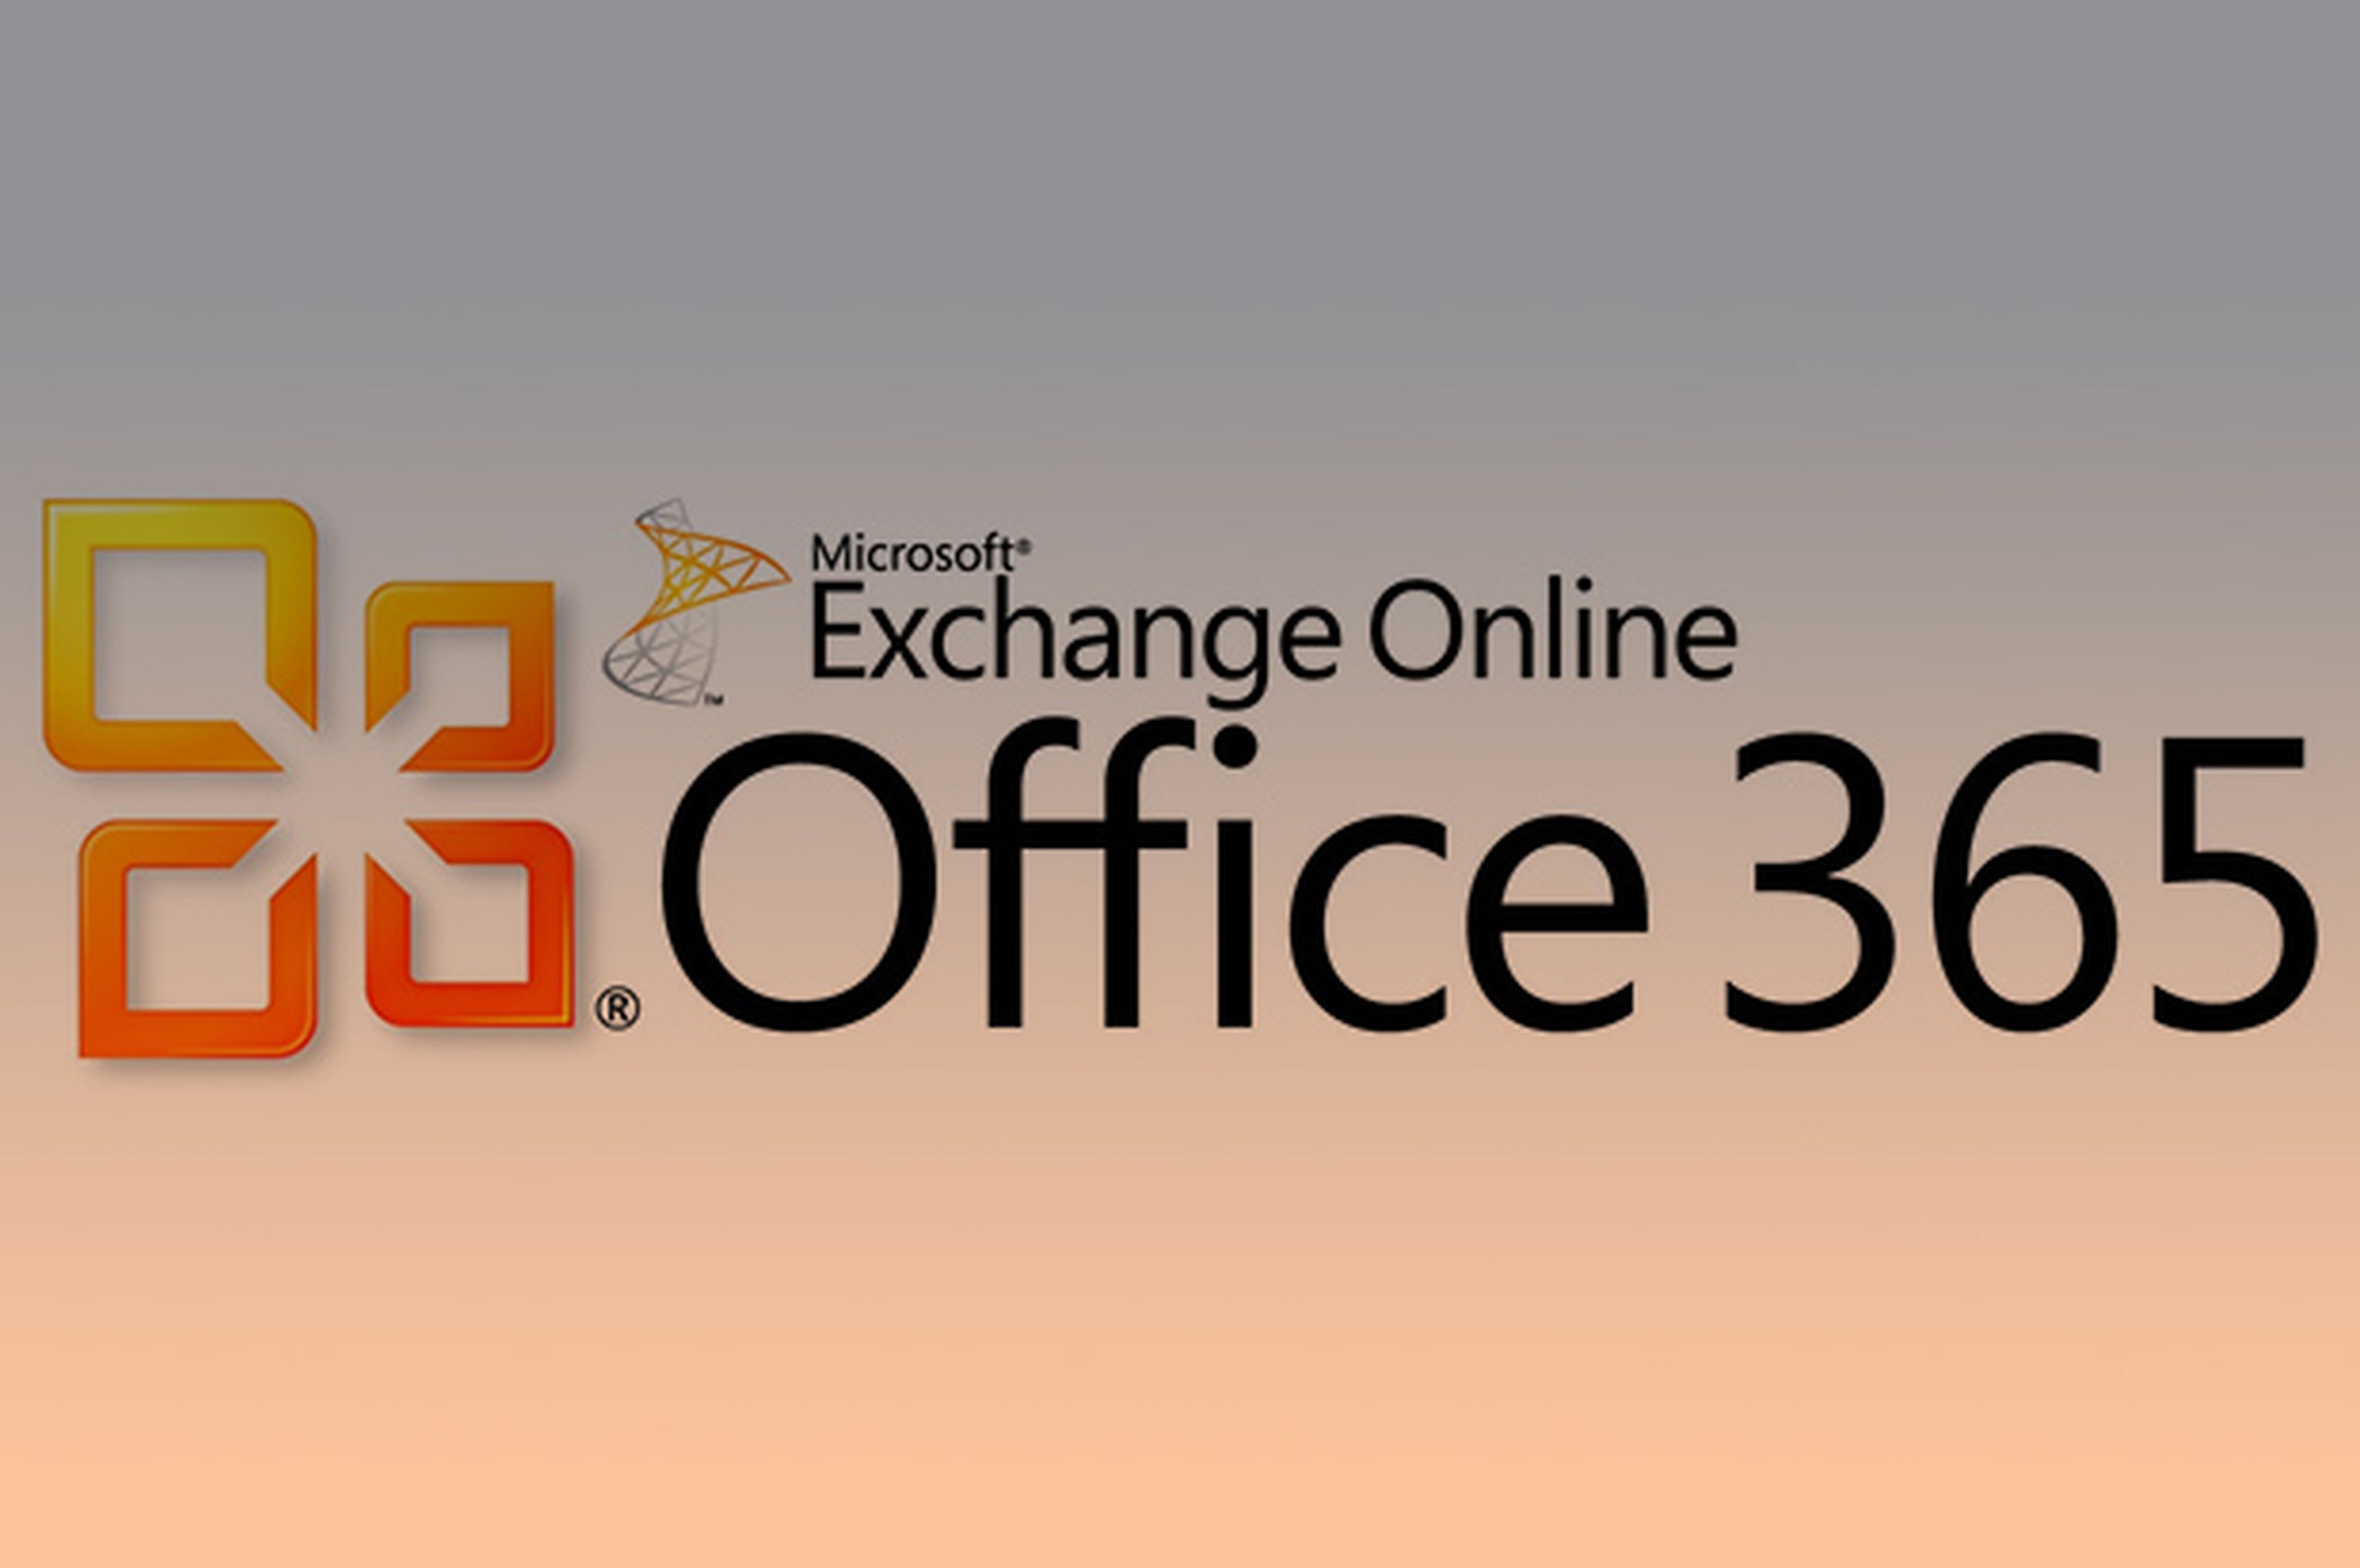 Microsoft duplica espacio para Exchange Online, Office 365